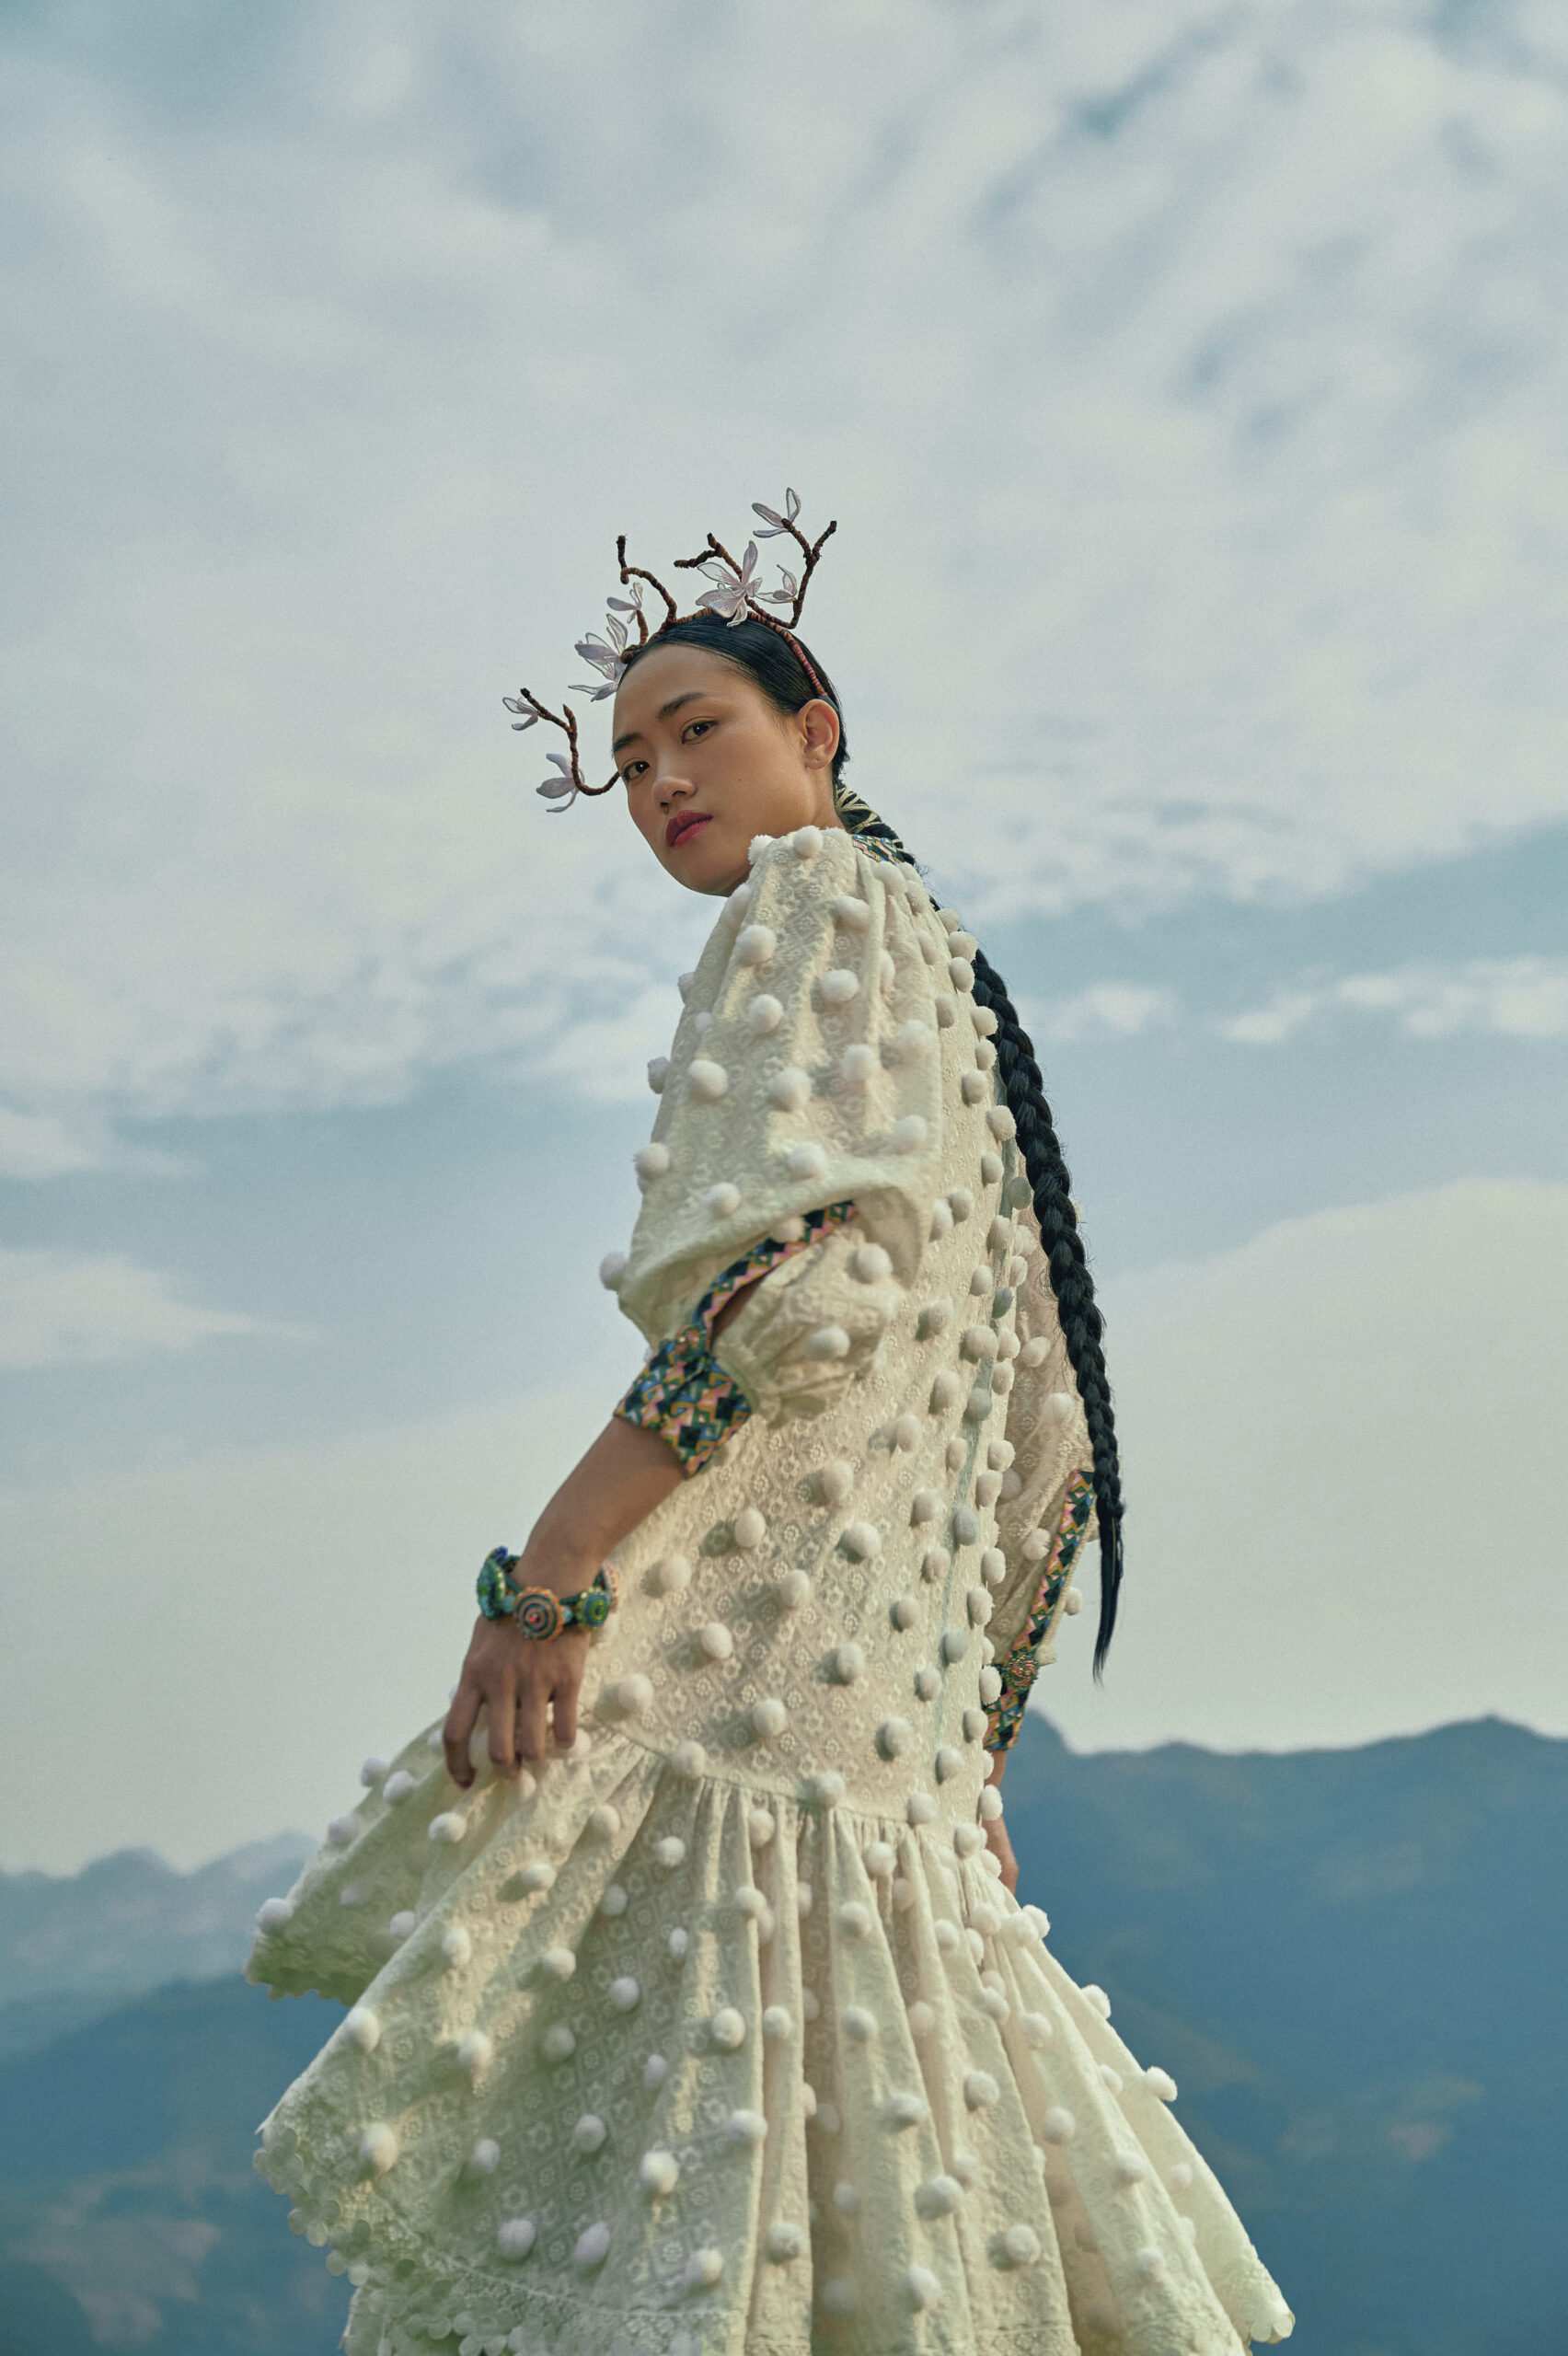 THUY DESIGN HOUSE “Tơ Hồng”: Chiếc khăn Piêu dệt tình yêu trên triền núi Tây Bắc